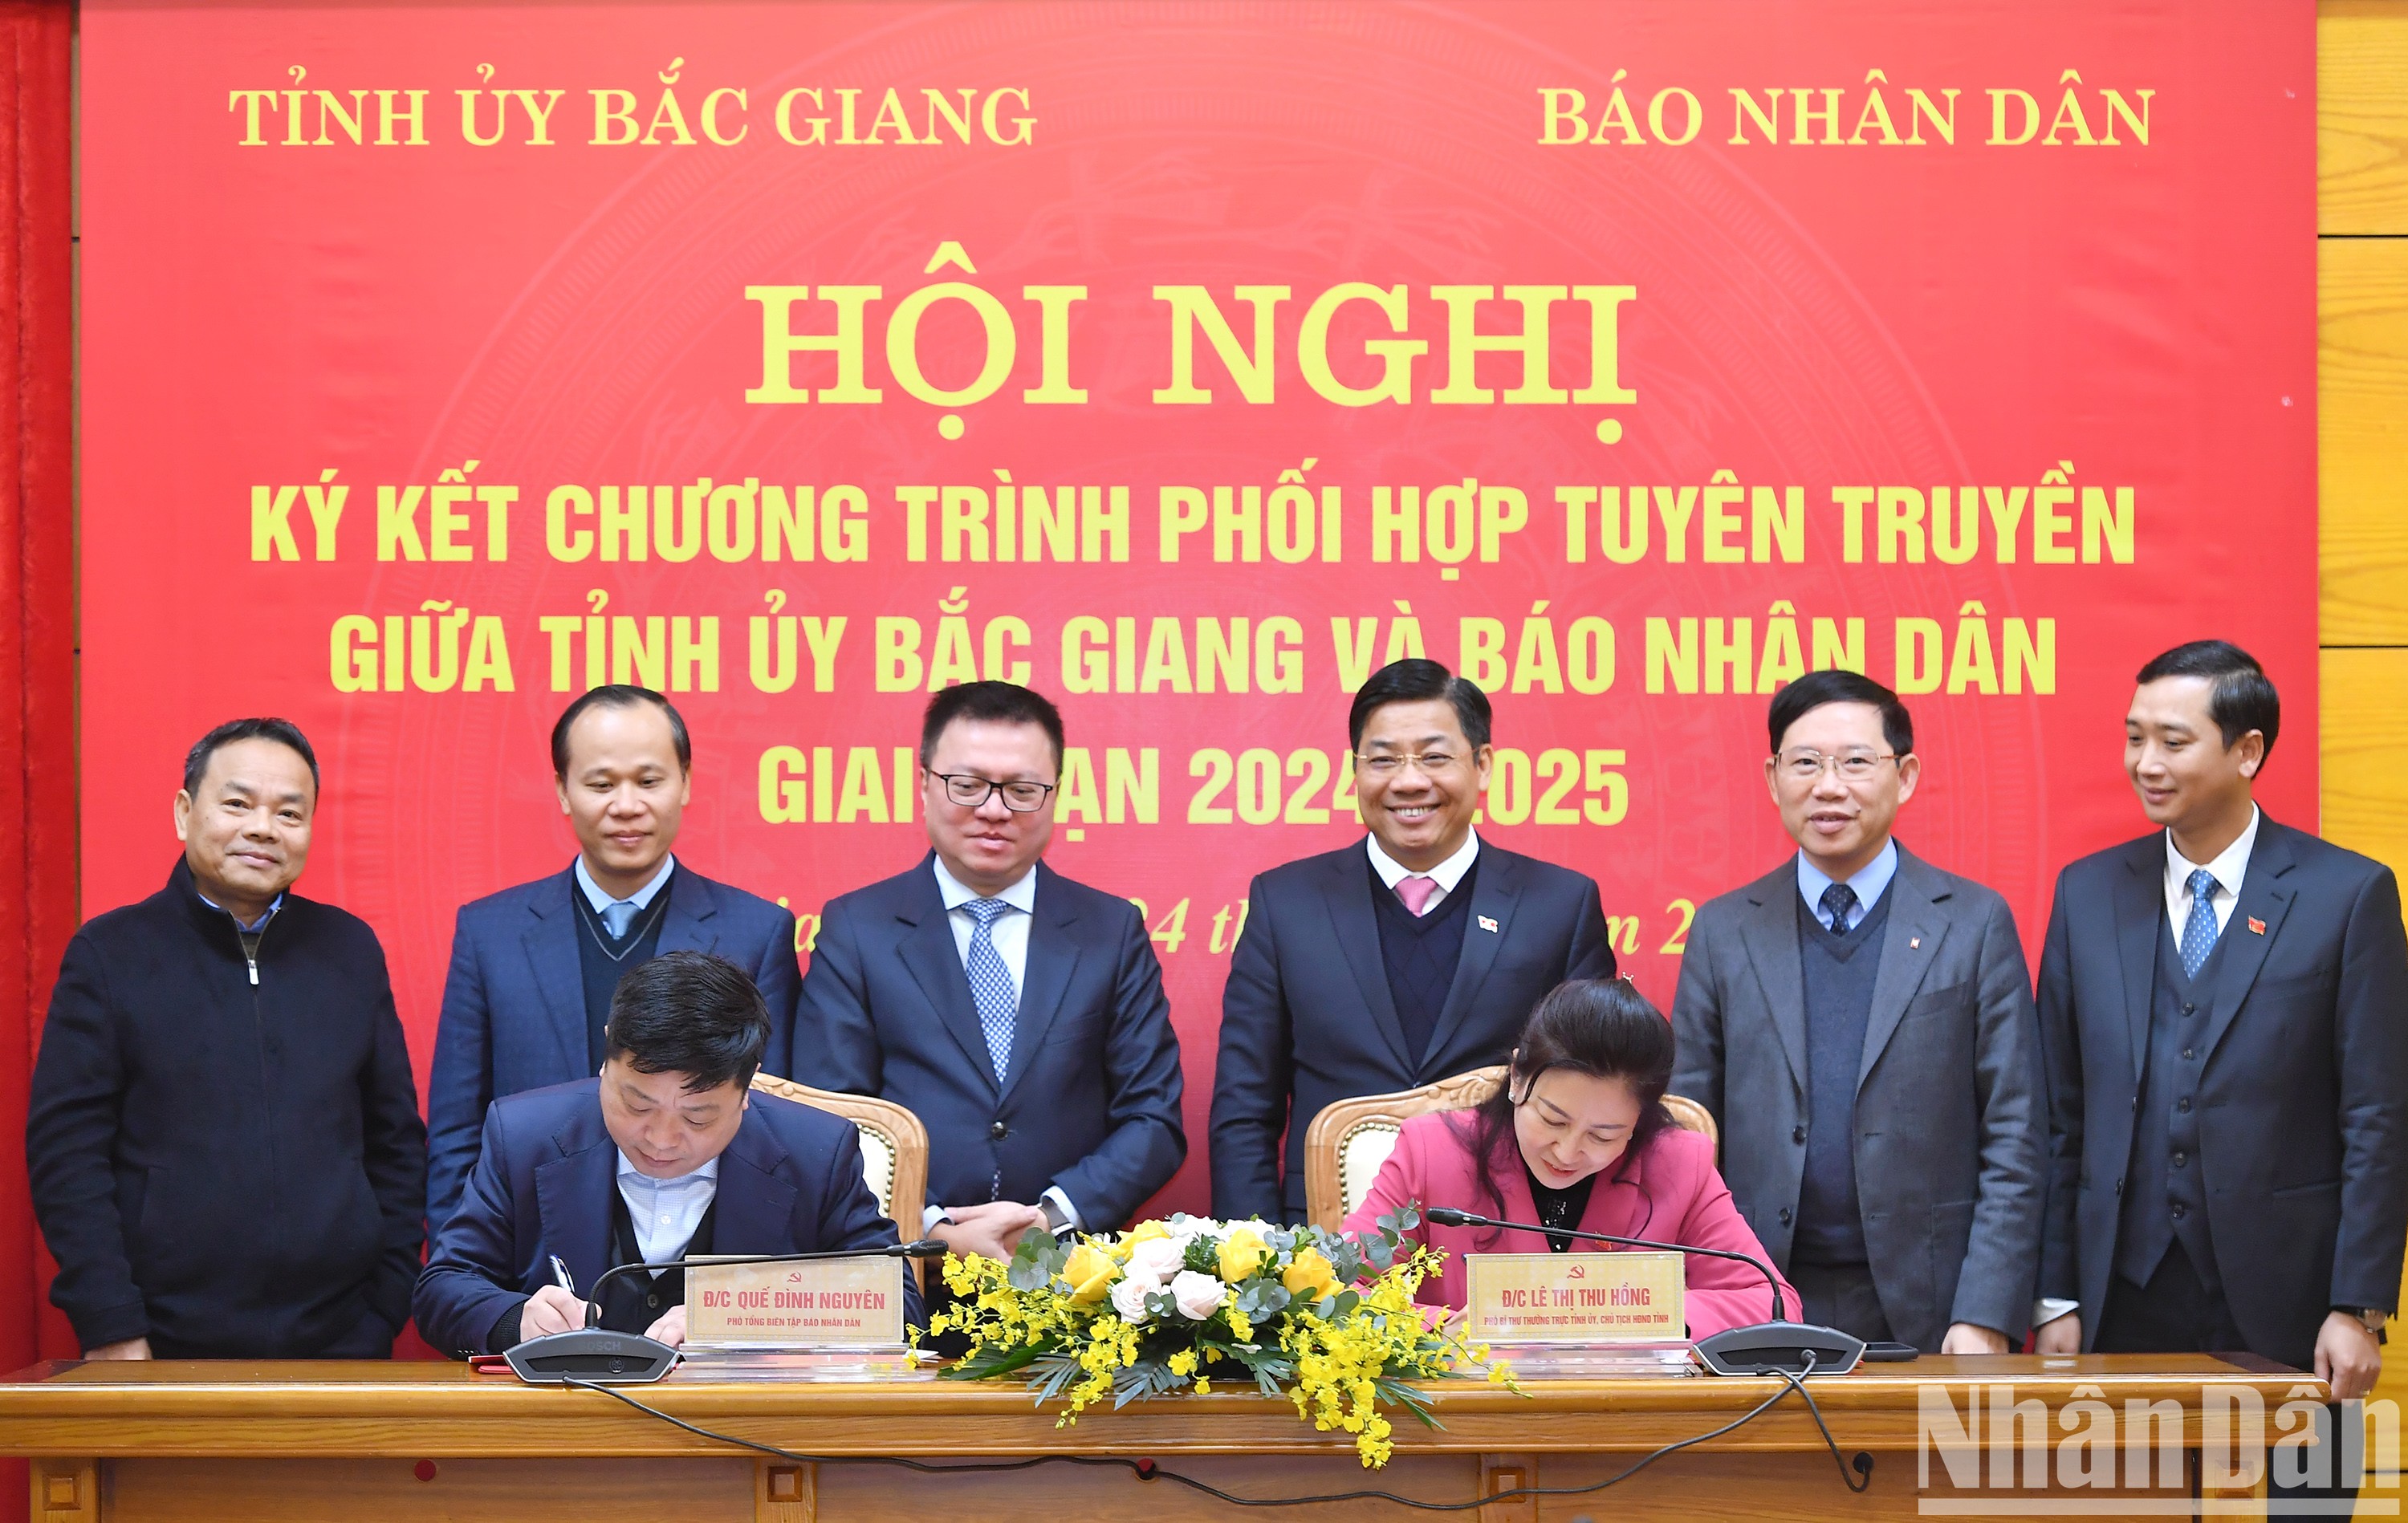 [Ảnh] Báo Nhân Dân và tỉnh Bắc Giang ký kết Chương trình phối hợp tuyên truyền giai đoạn 2024-2025